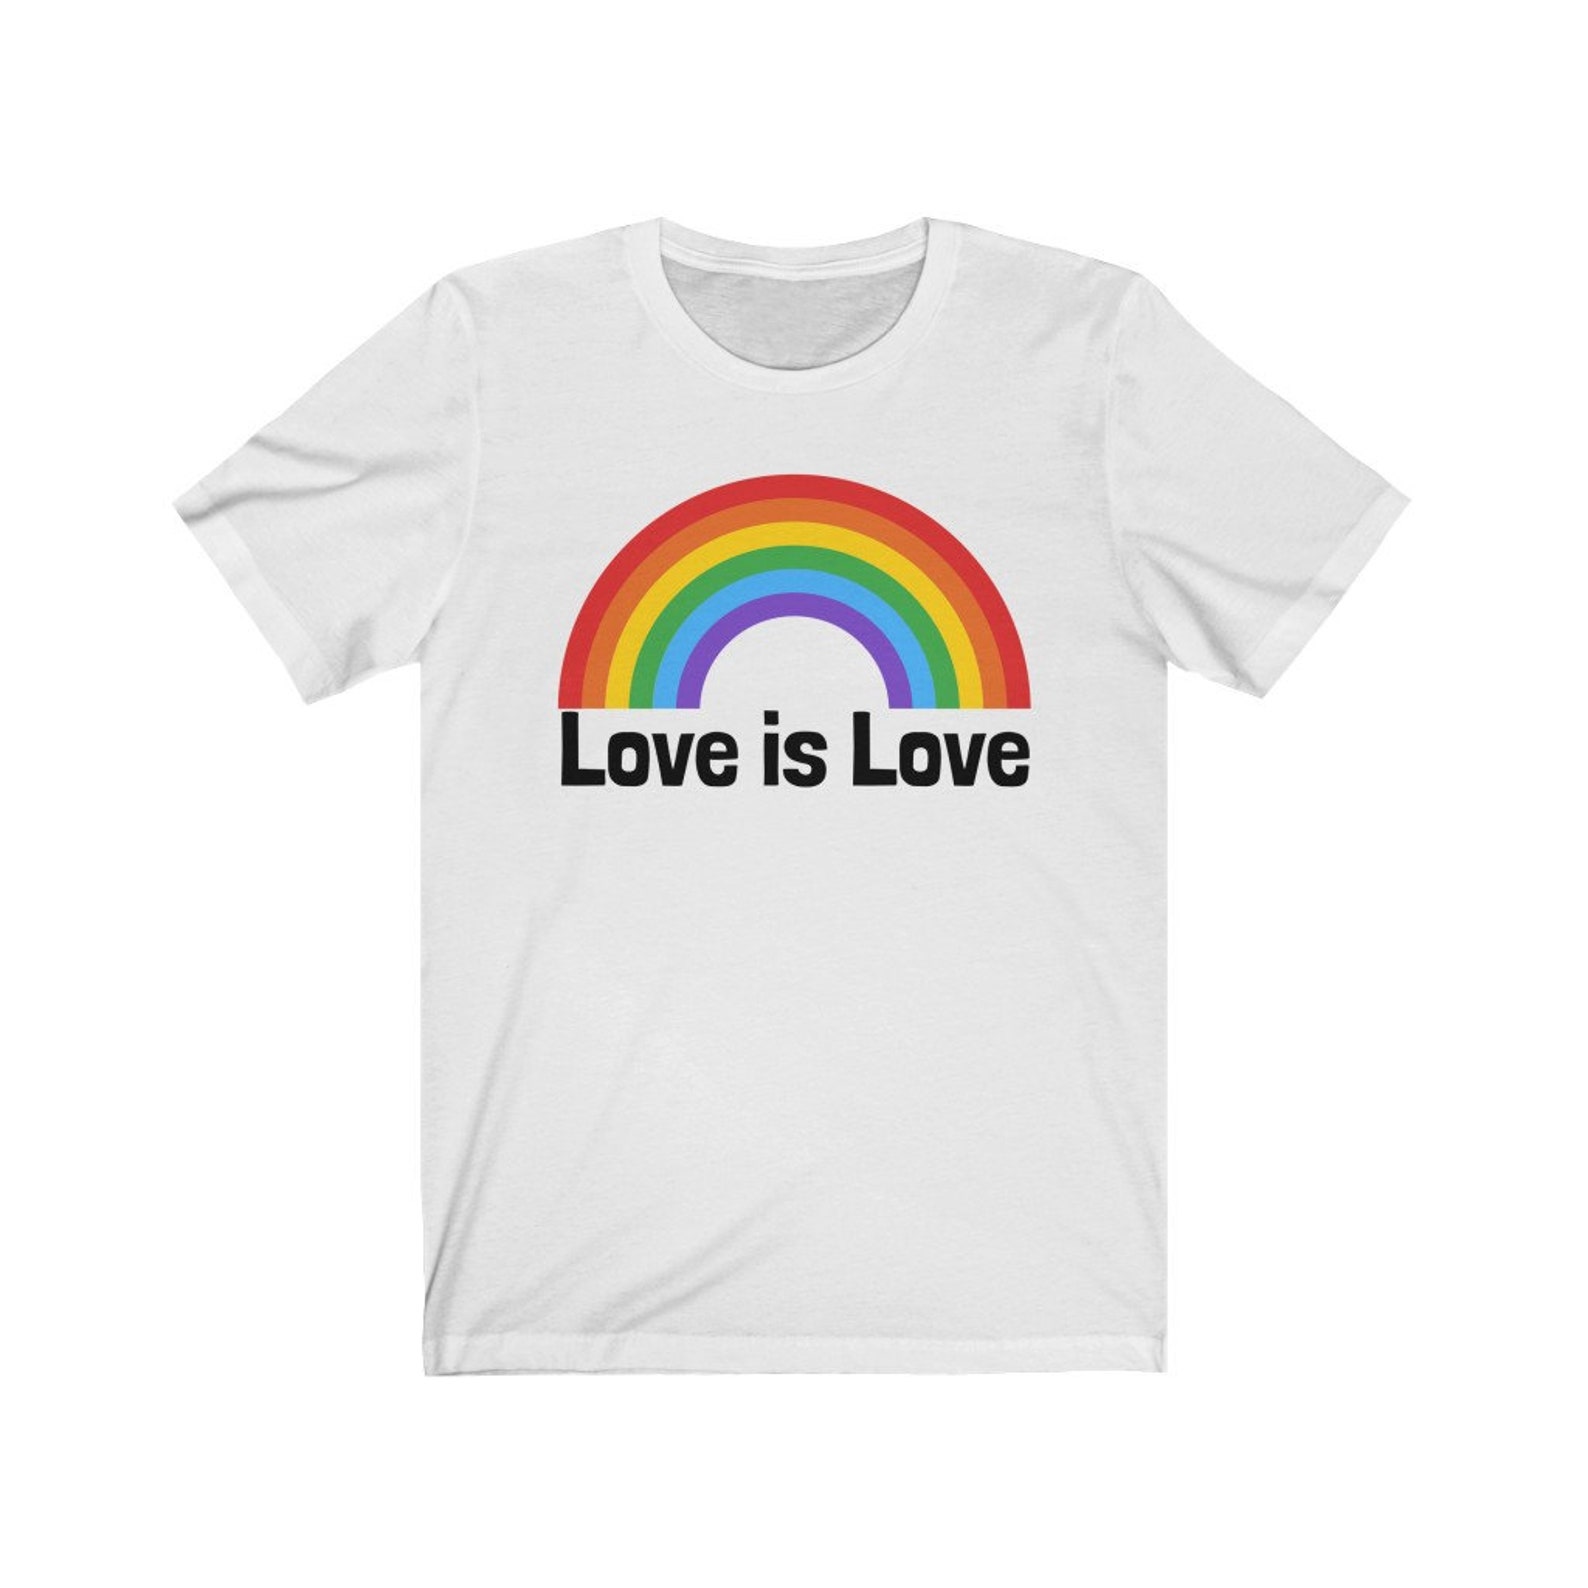 Love Is Love Tshirt Love Is Love Shirt Pride Tshirt LGBT | Etsy